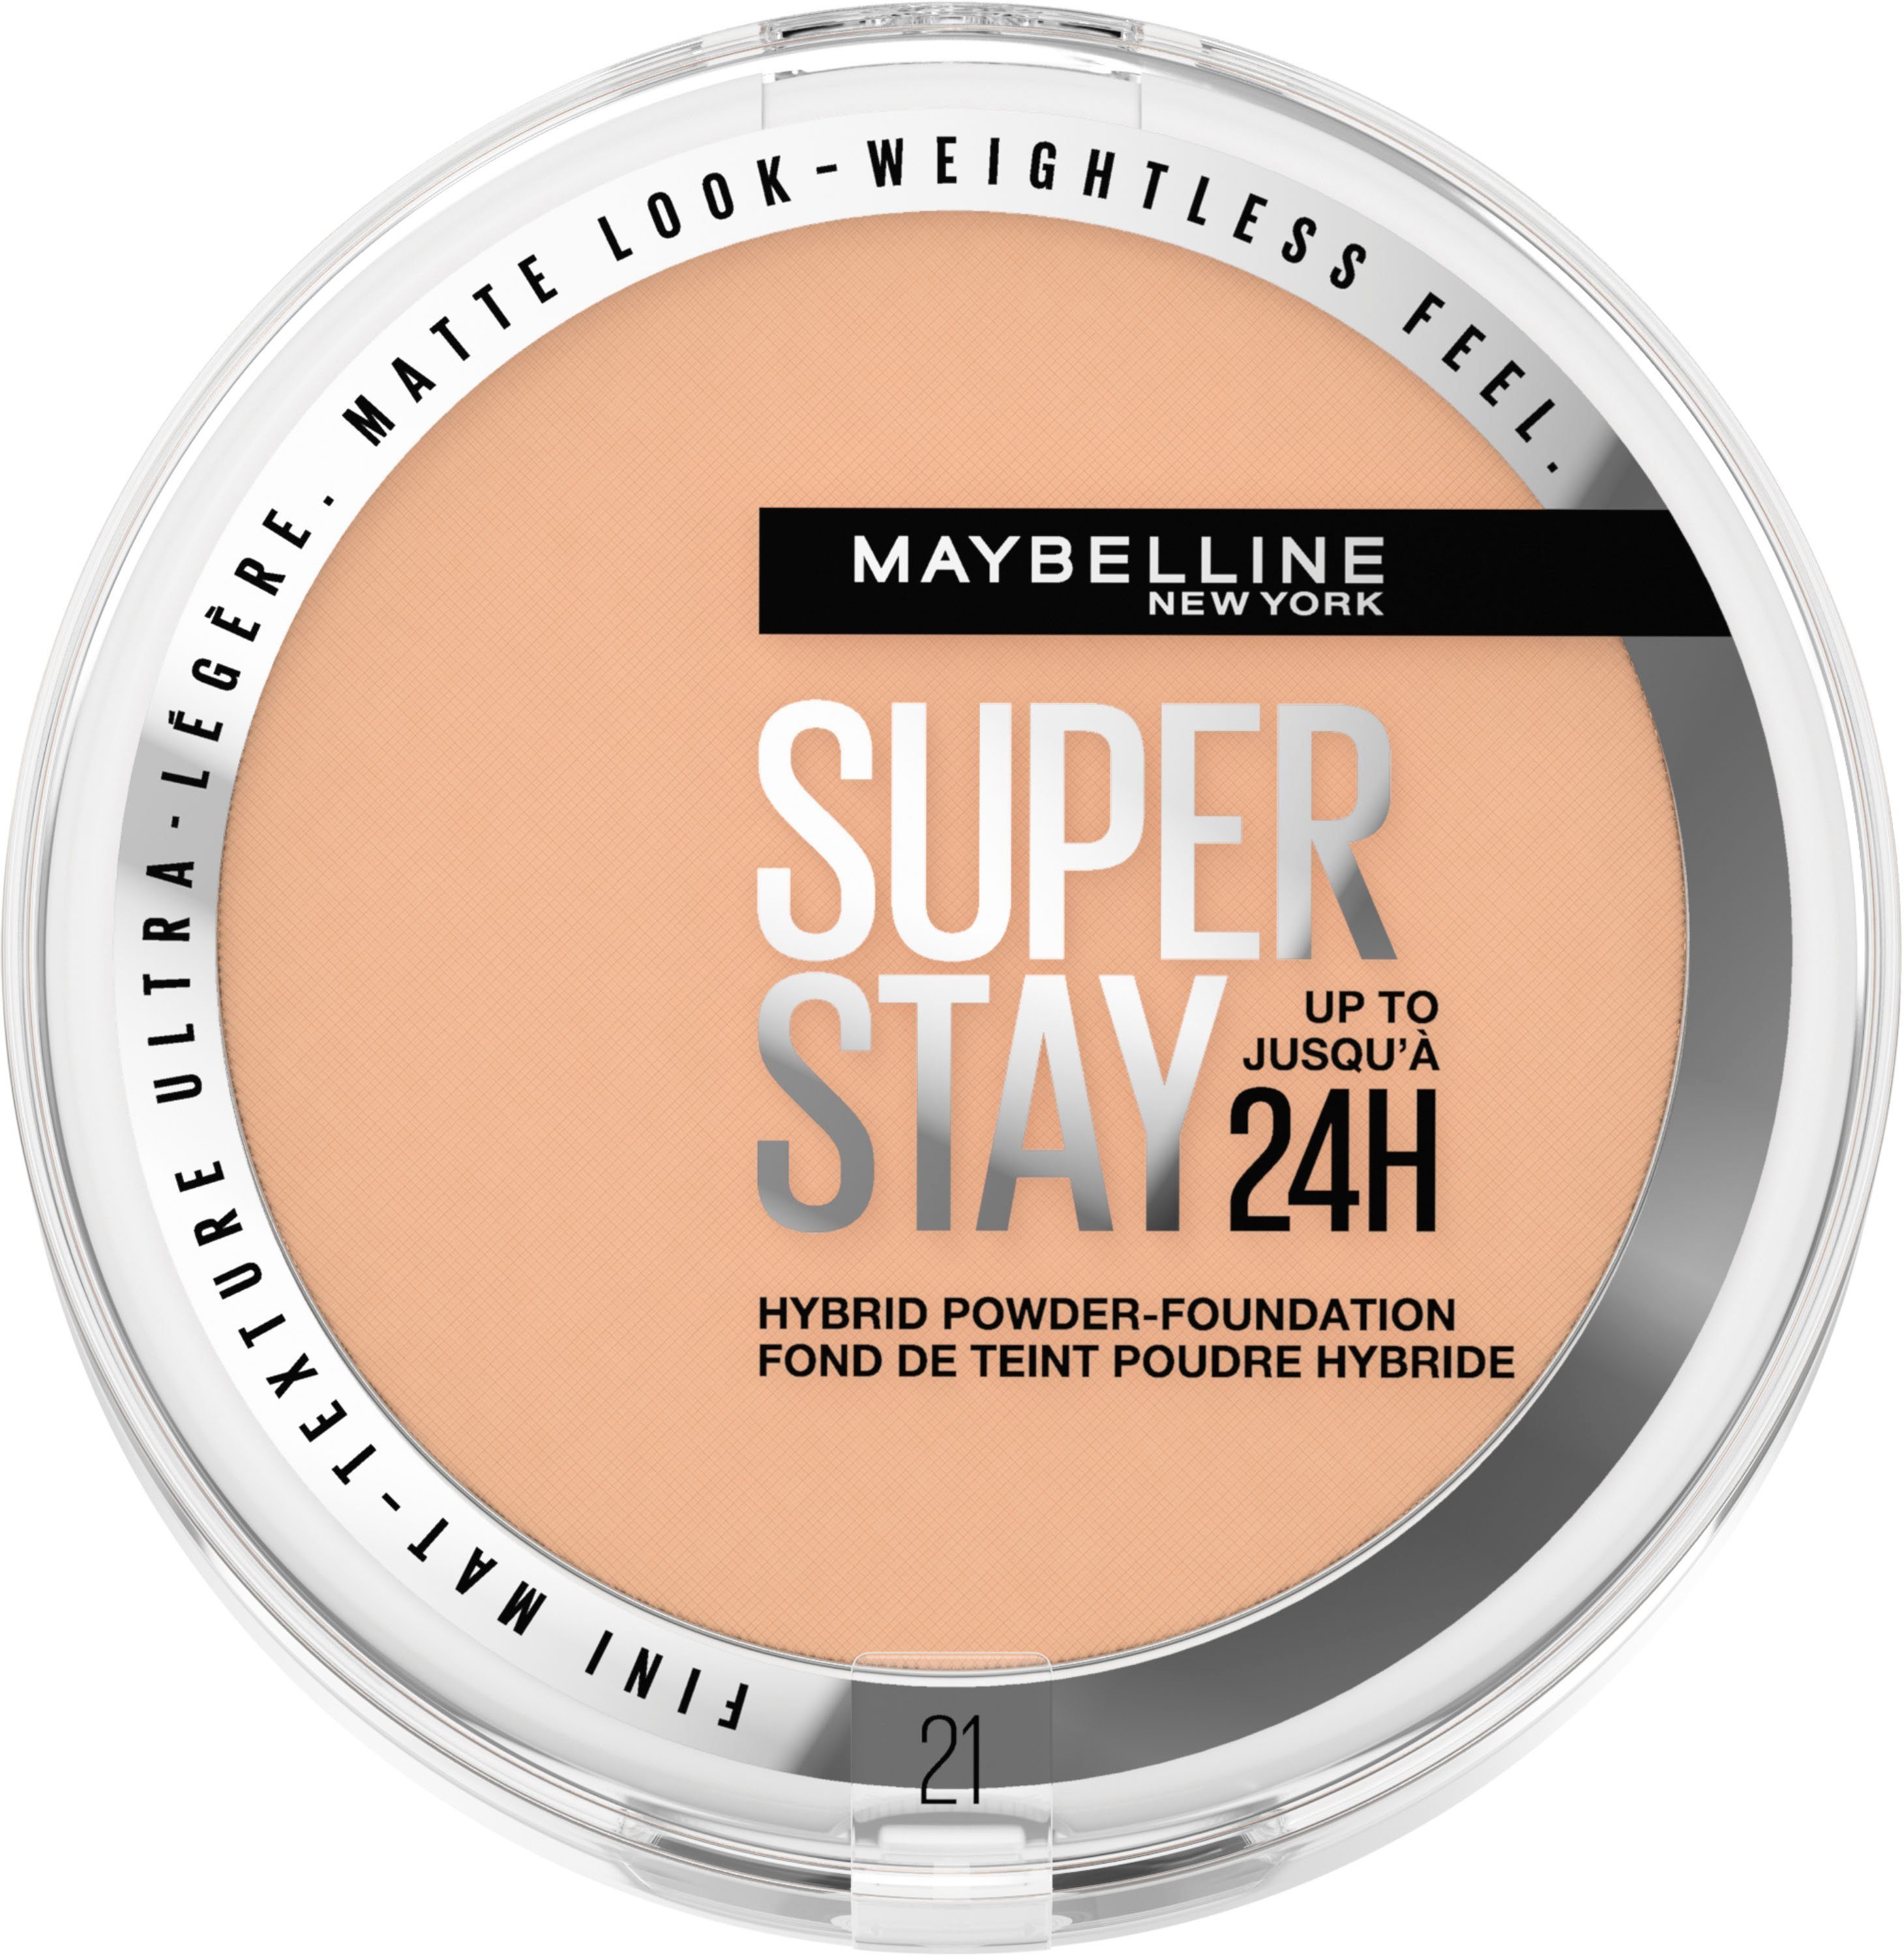 Extrem beliebt zu günstigen Preisen MAYBELLINE NEW YORK Foundation New York Super Maybelline Hybrides Stay Make-Up Puder